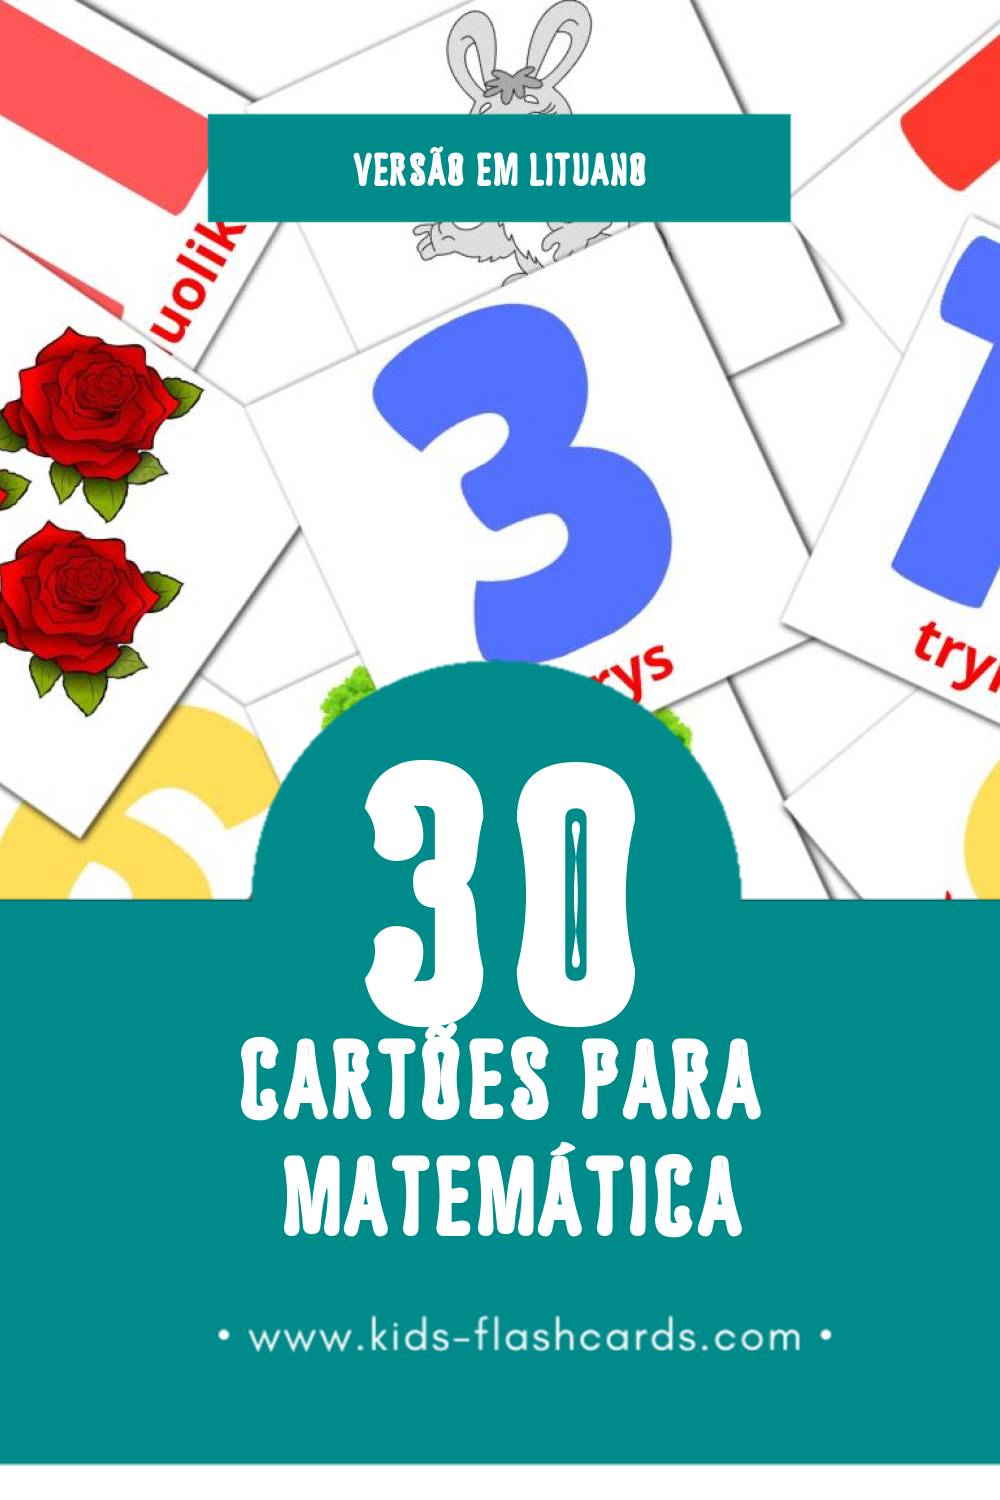 Flashcards de Matematika  Visuais para Toddlers (30 cartões em Lituano)